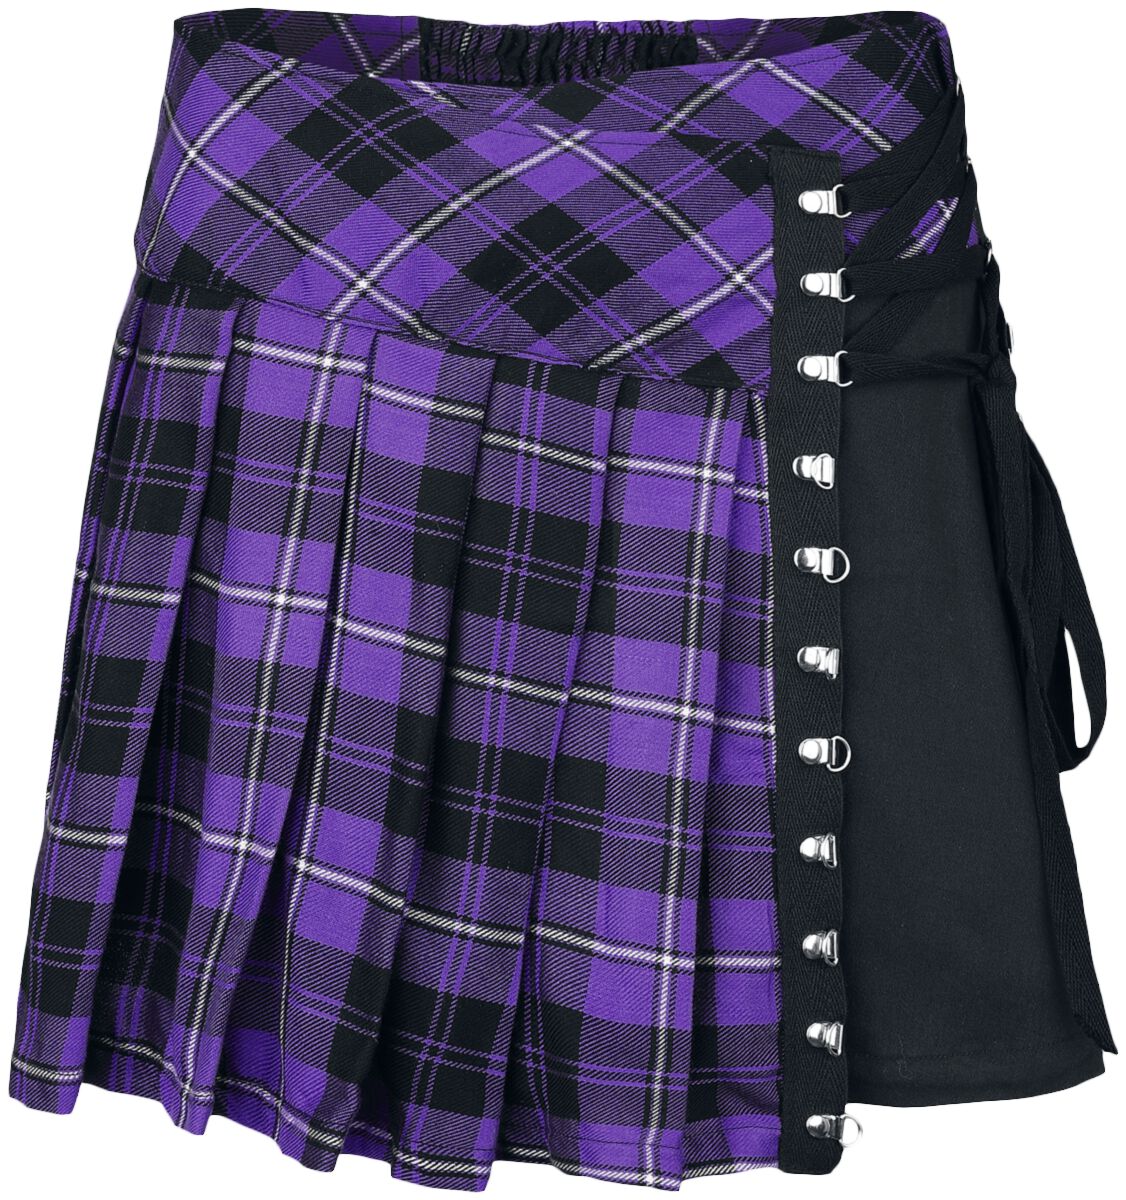 Chemical Black - Gothic Kurzer Rock - Hybrid Skirt - XS bis 4XL - für Damen - Größe 3XL - lila/schwarz